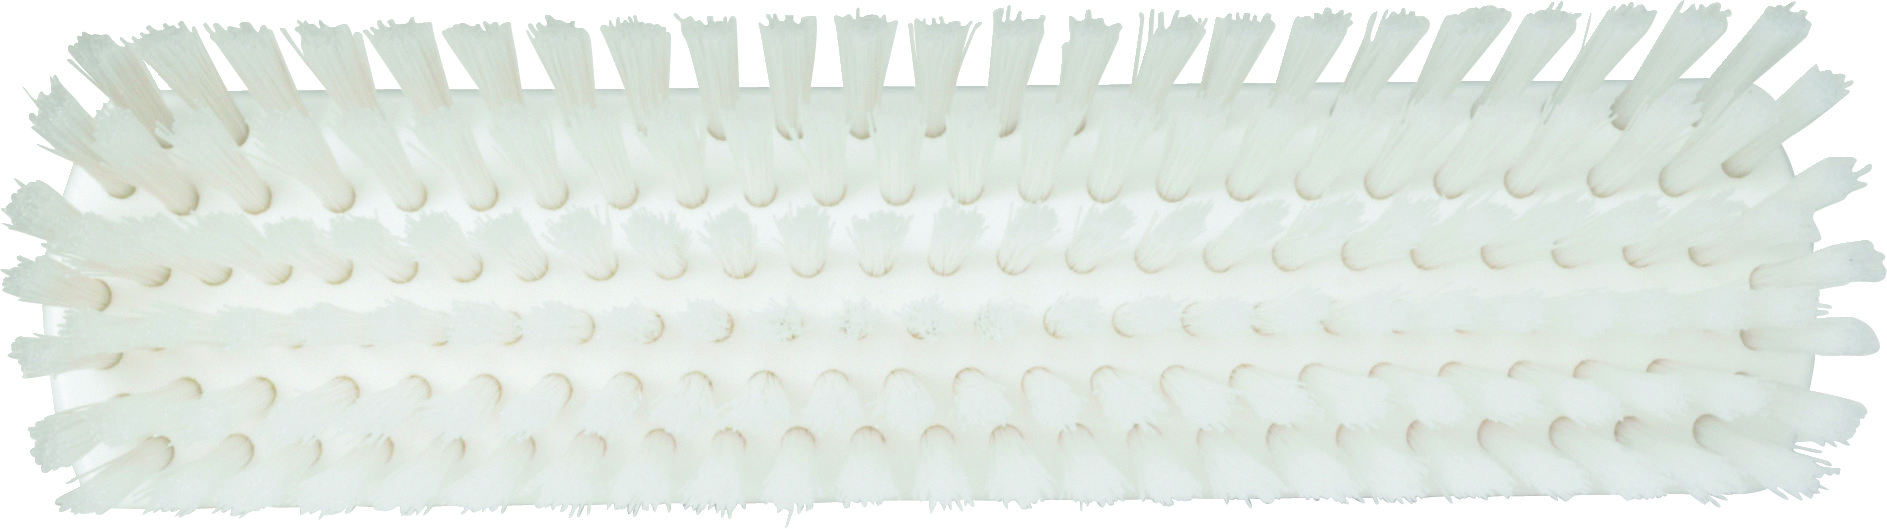 Щетка Vikan для мытья полов и стен жесткая, 305 мм, белая